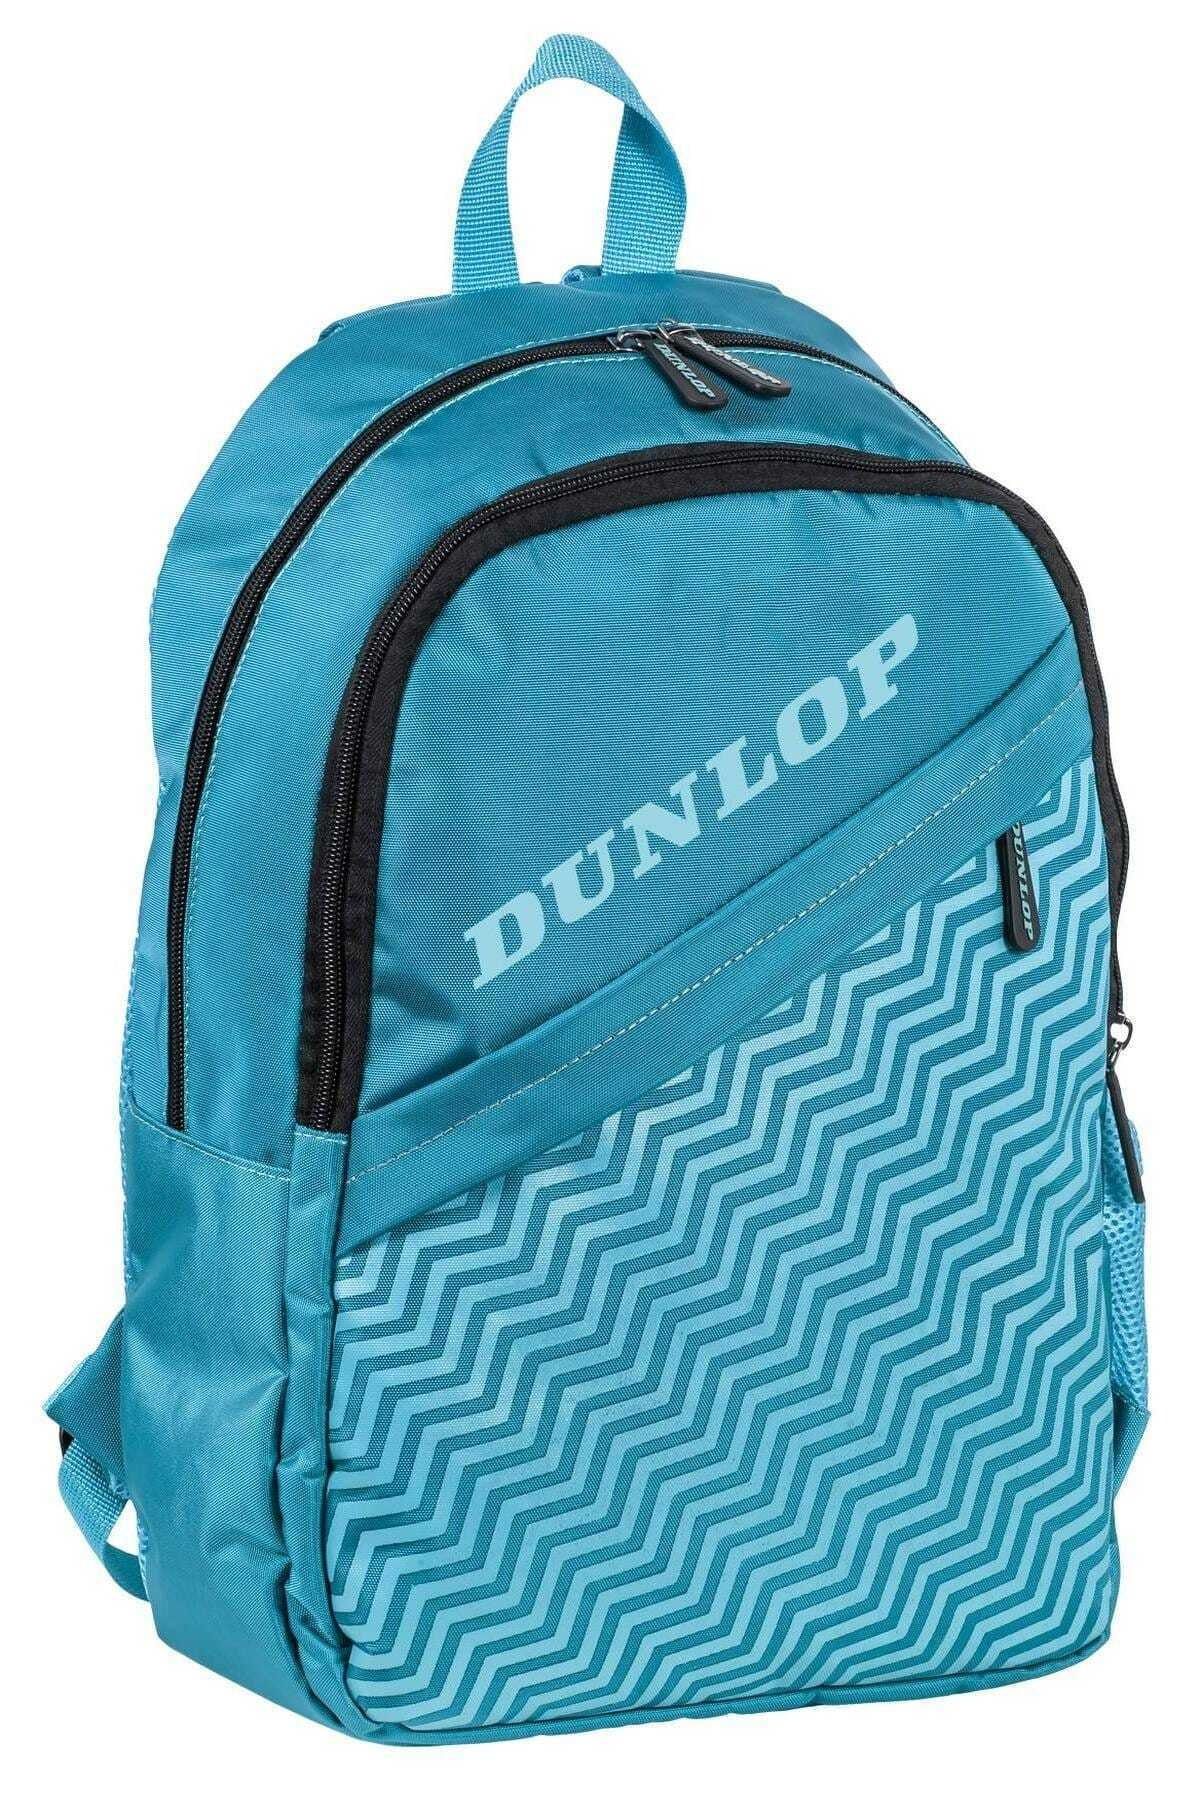 Dunlop Turkuaz Unisex Sırt Çantası DPÇAN9495